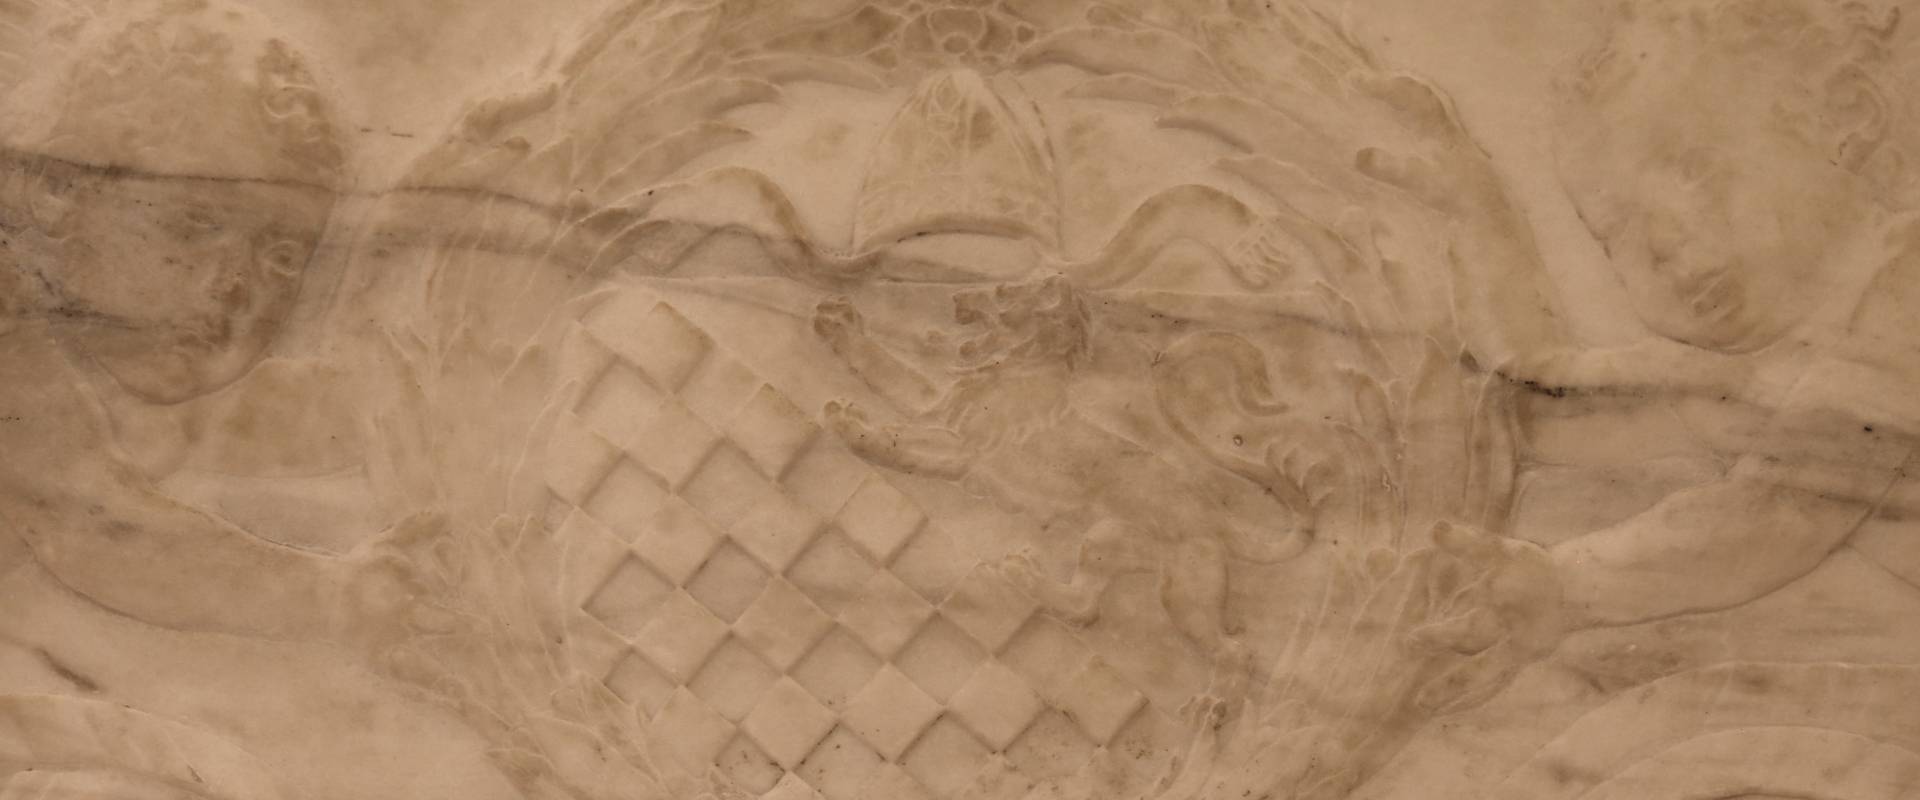 Antonio rossellino, sarcofago del beato marcolino amanni, 1458, da s. giacomo in s. domenico a forlì, 17 stemma rucellai foto di Sailko